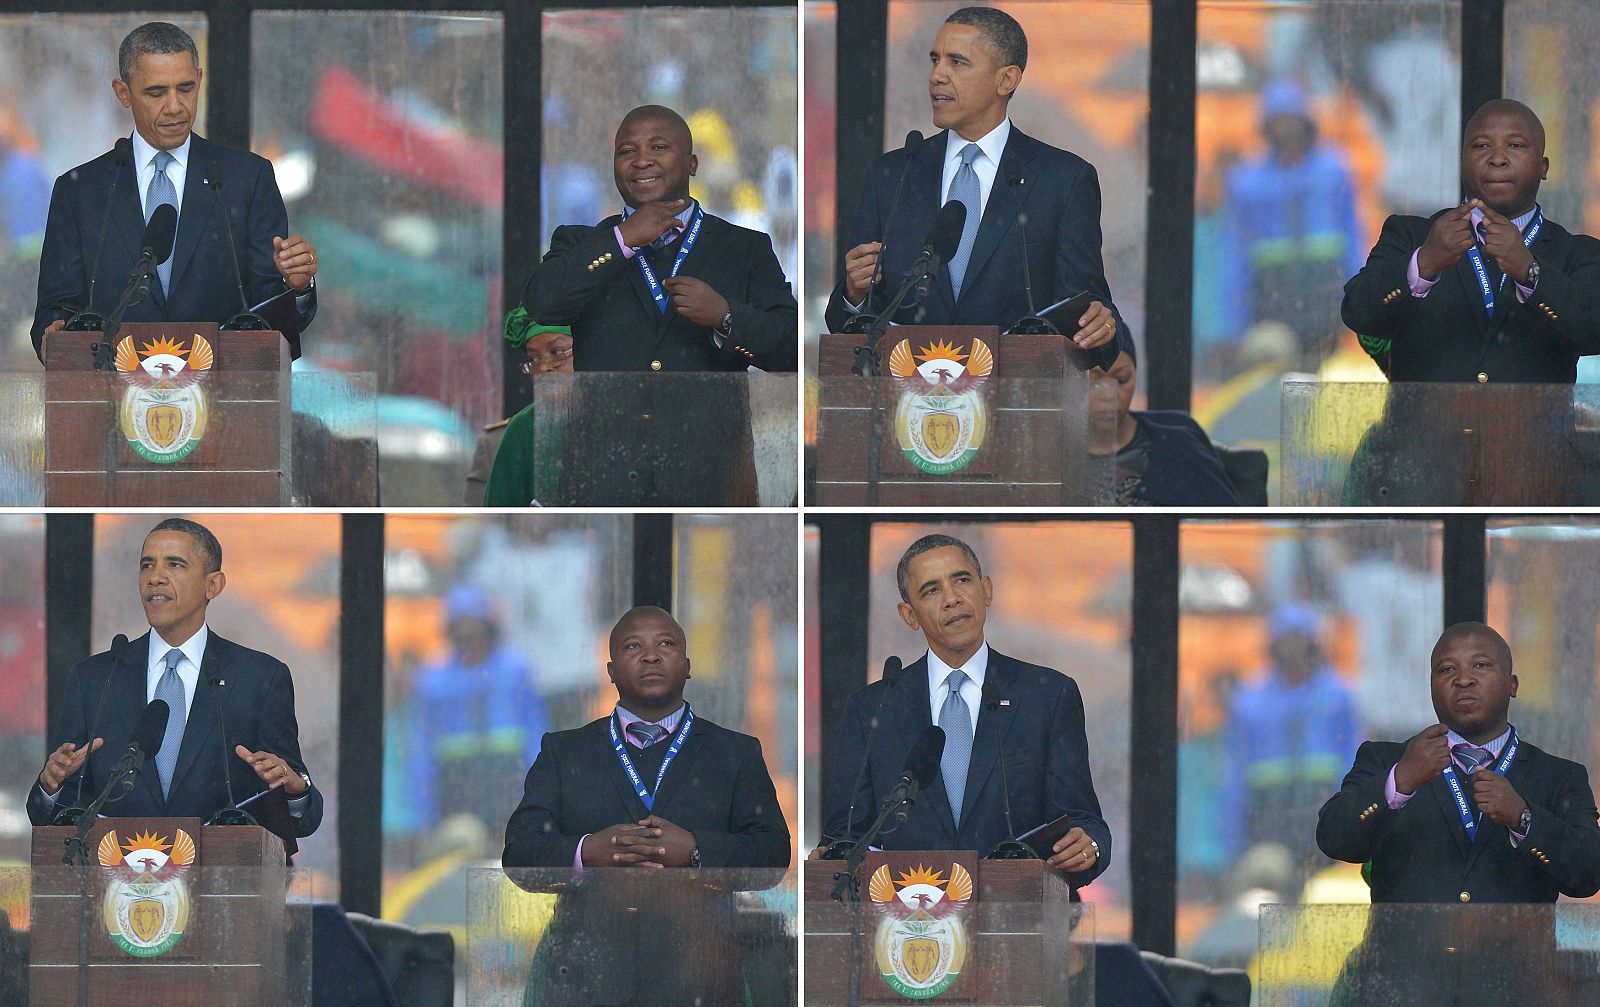 El presidente de EE.UU., Barack Obama, habla mientras el intérprete de signos le traduce en el memorial de Nelson Mandela